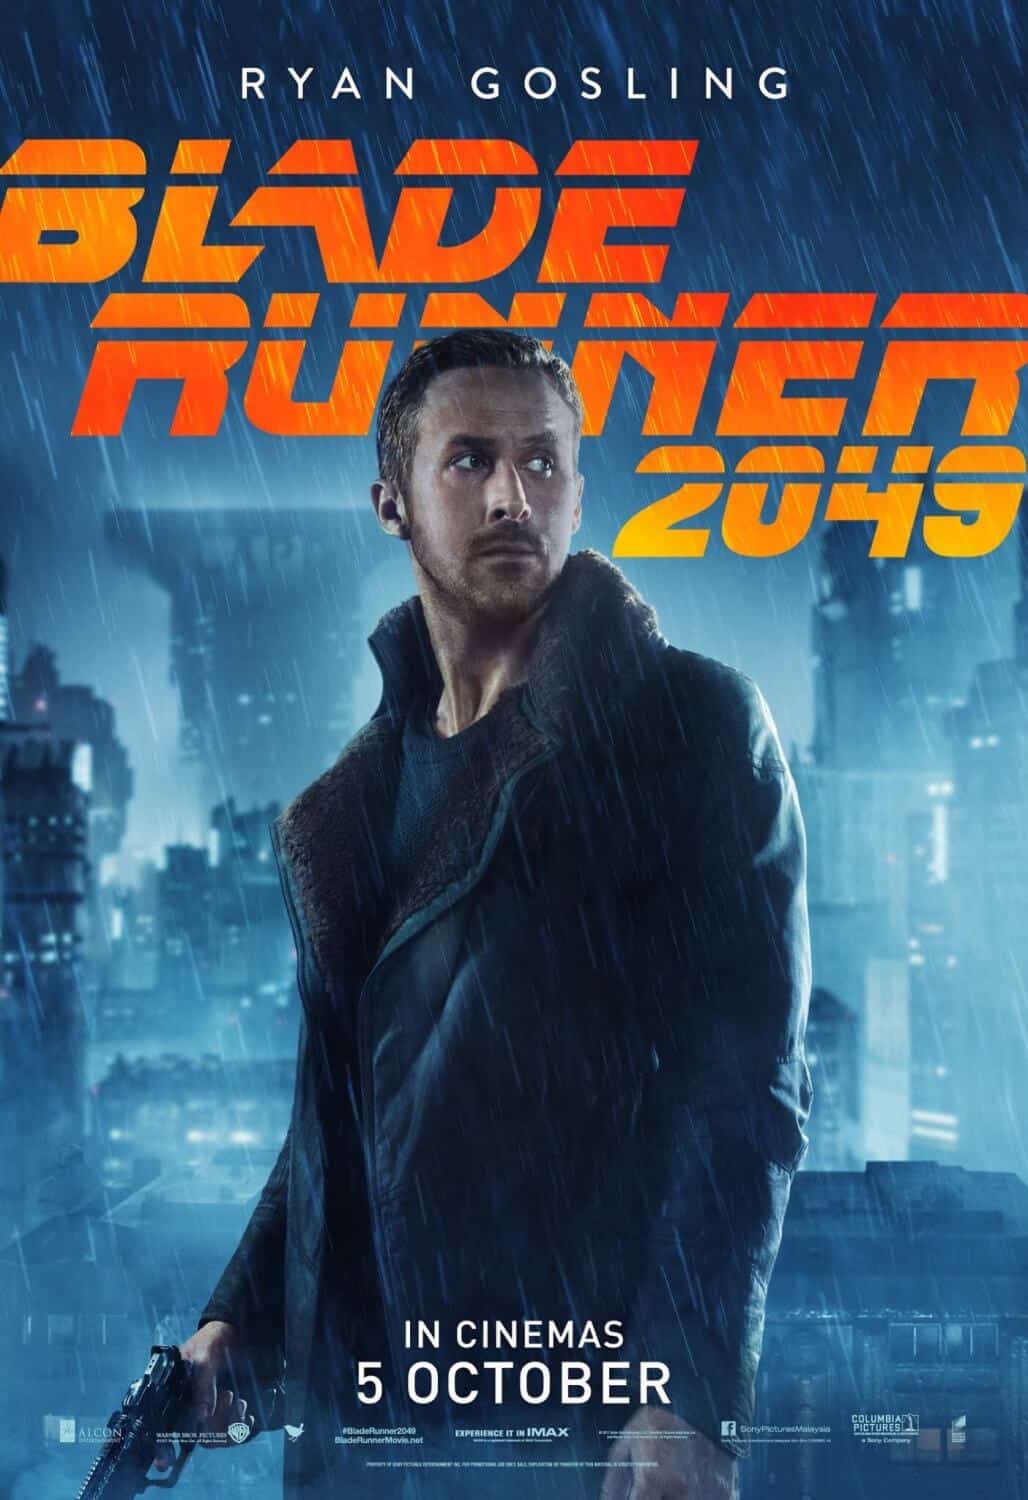 ryan gosling blade runner 2049 character poster